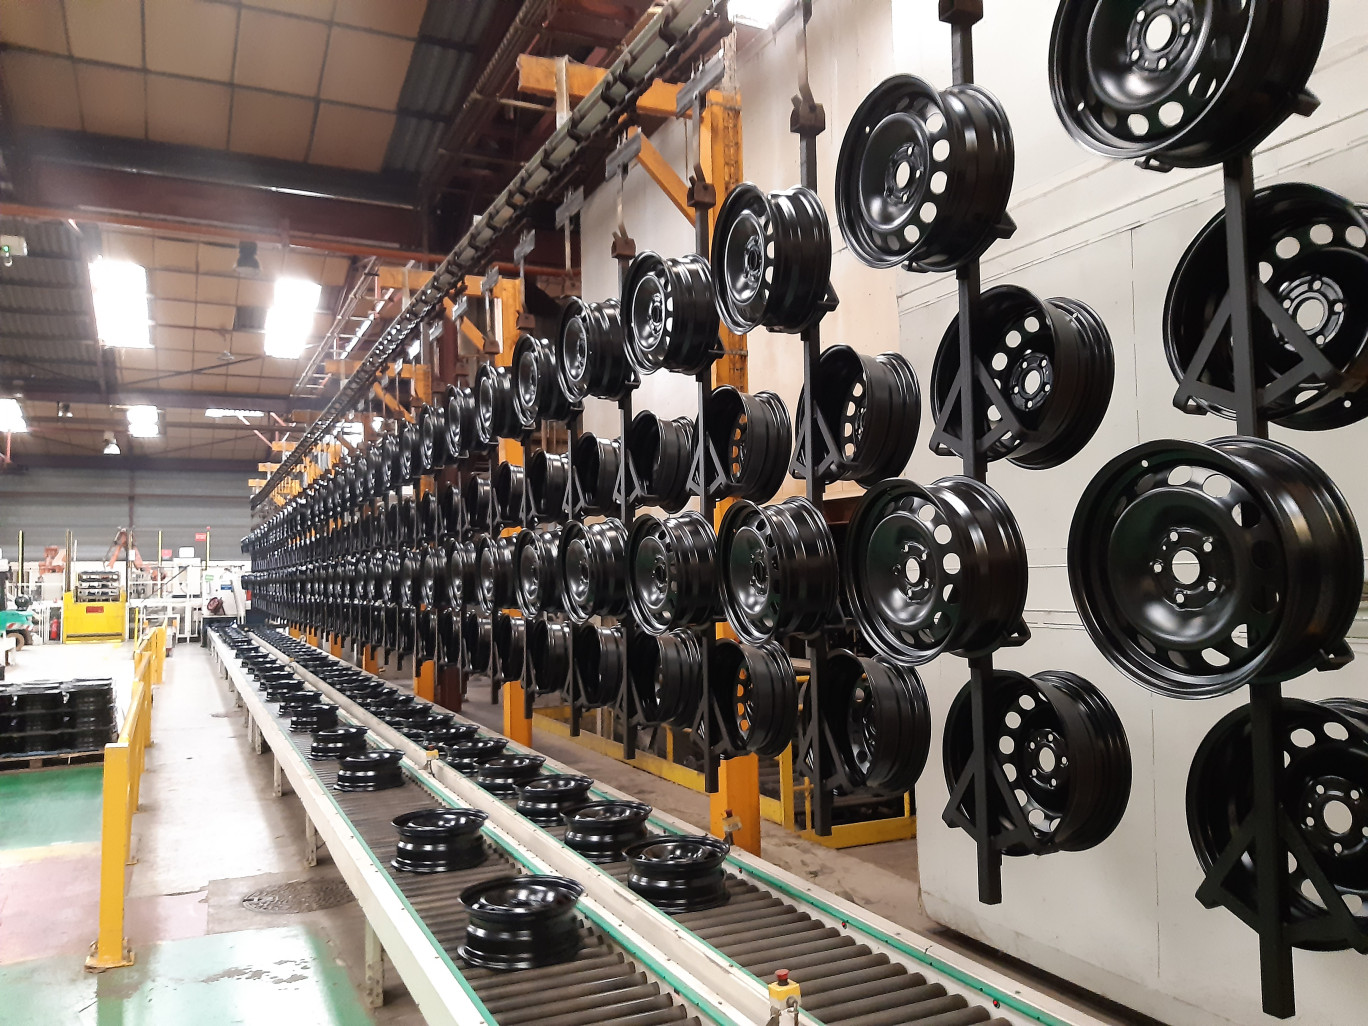 À Tergnier, Magnetto France emploie 250 personnes et produit annuellement entre 3,3 et 3,5 millions de roues, principalement pour des véhicules utilitaires. ©Magnetto Wheels France